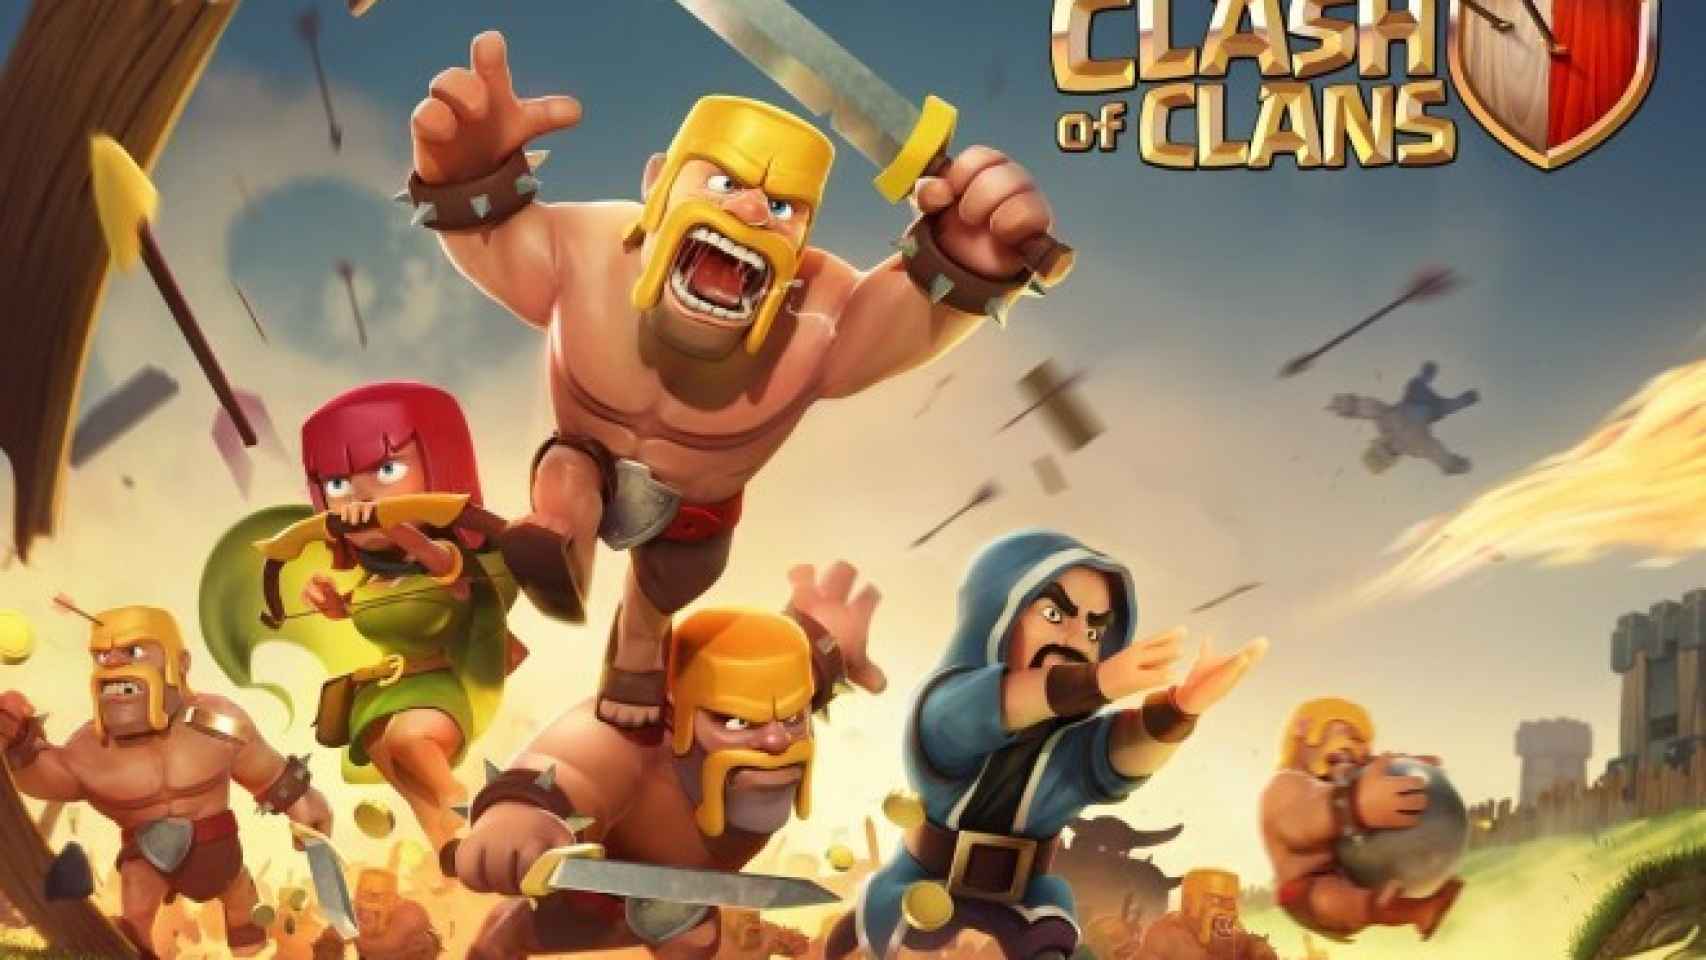 Clash of Clans llega a Android lleno de estrategia, guerreros y fantasía